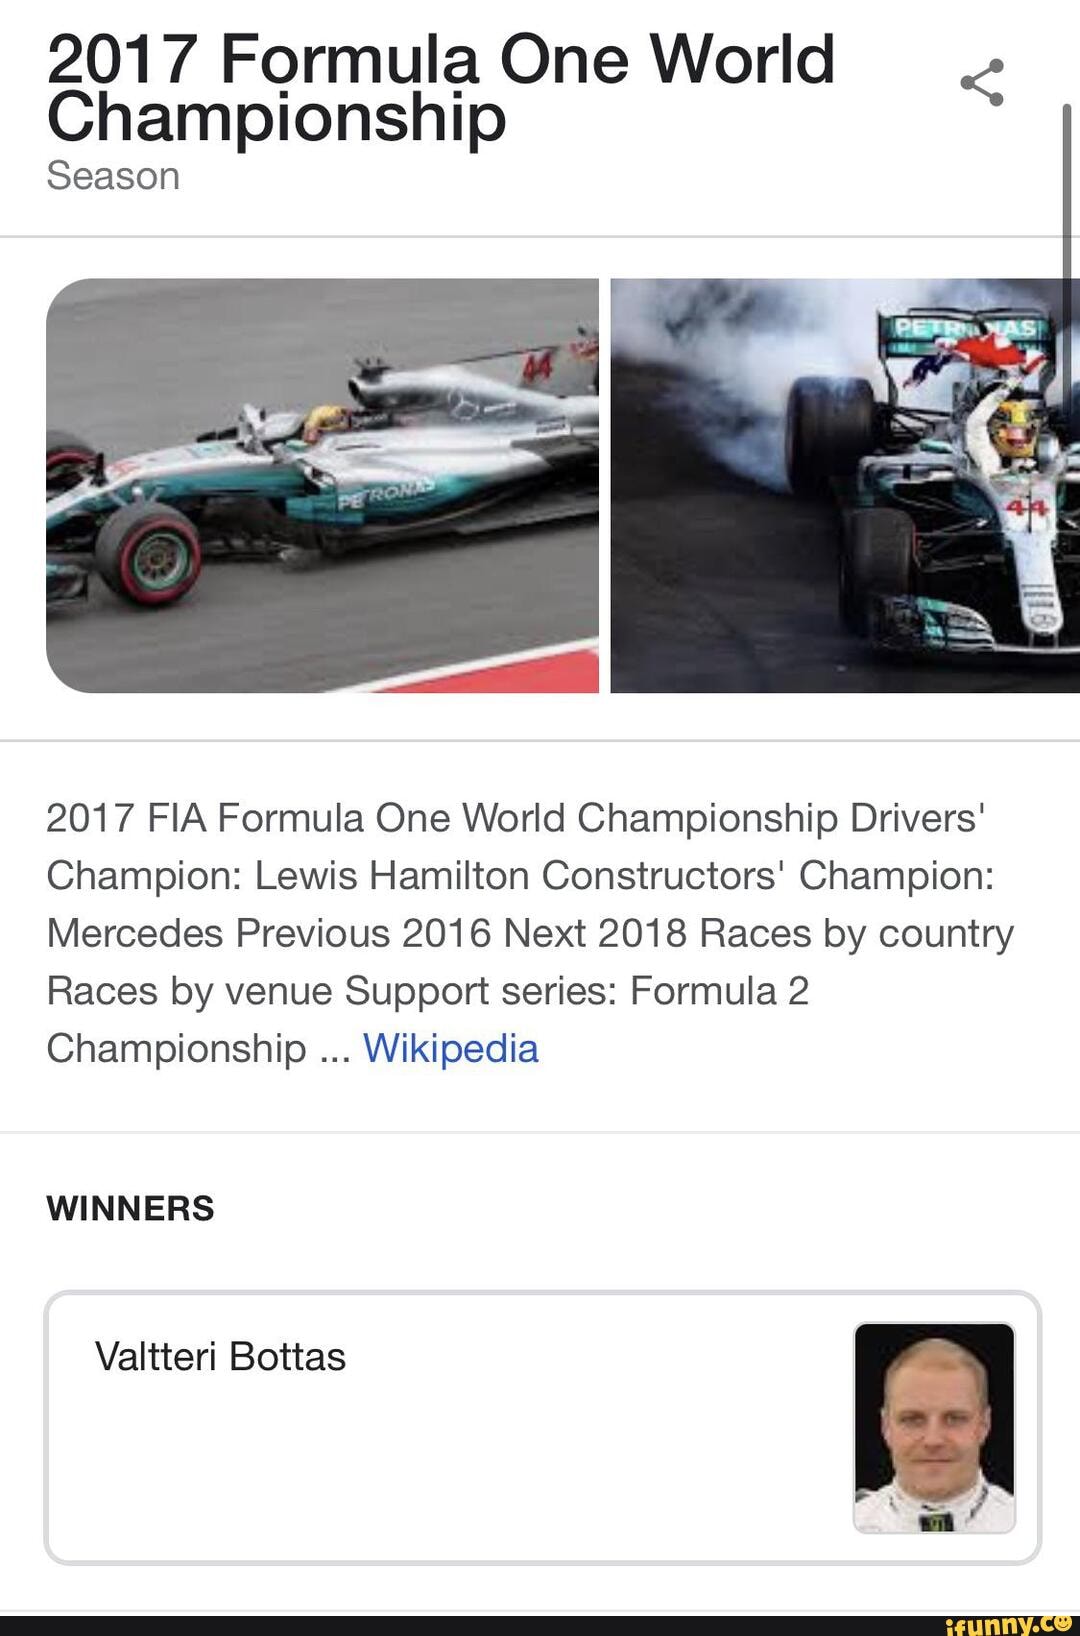 World championship - Wikipedia